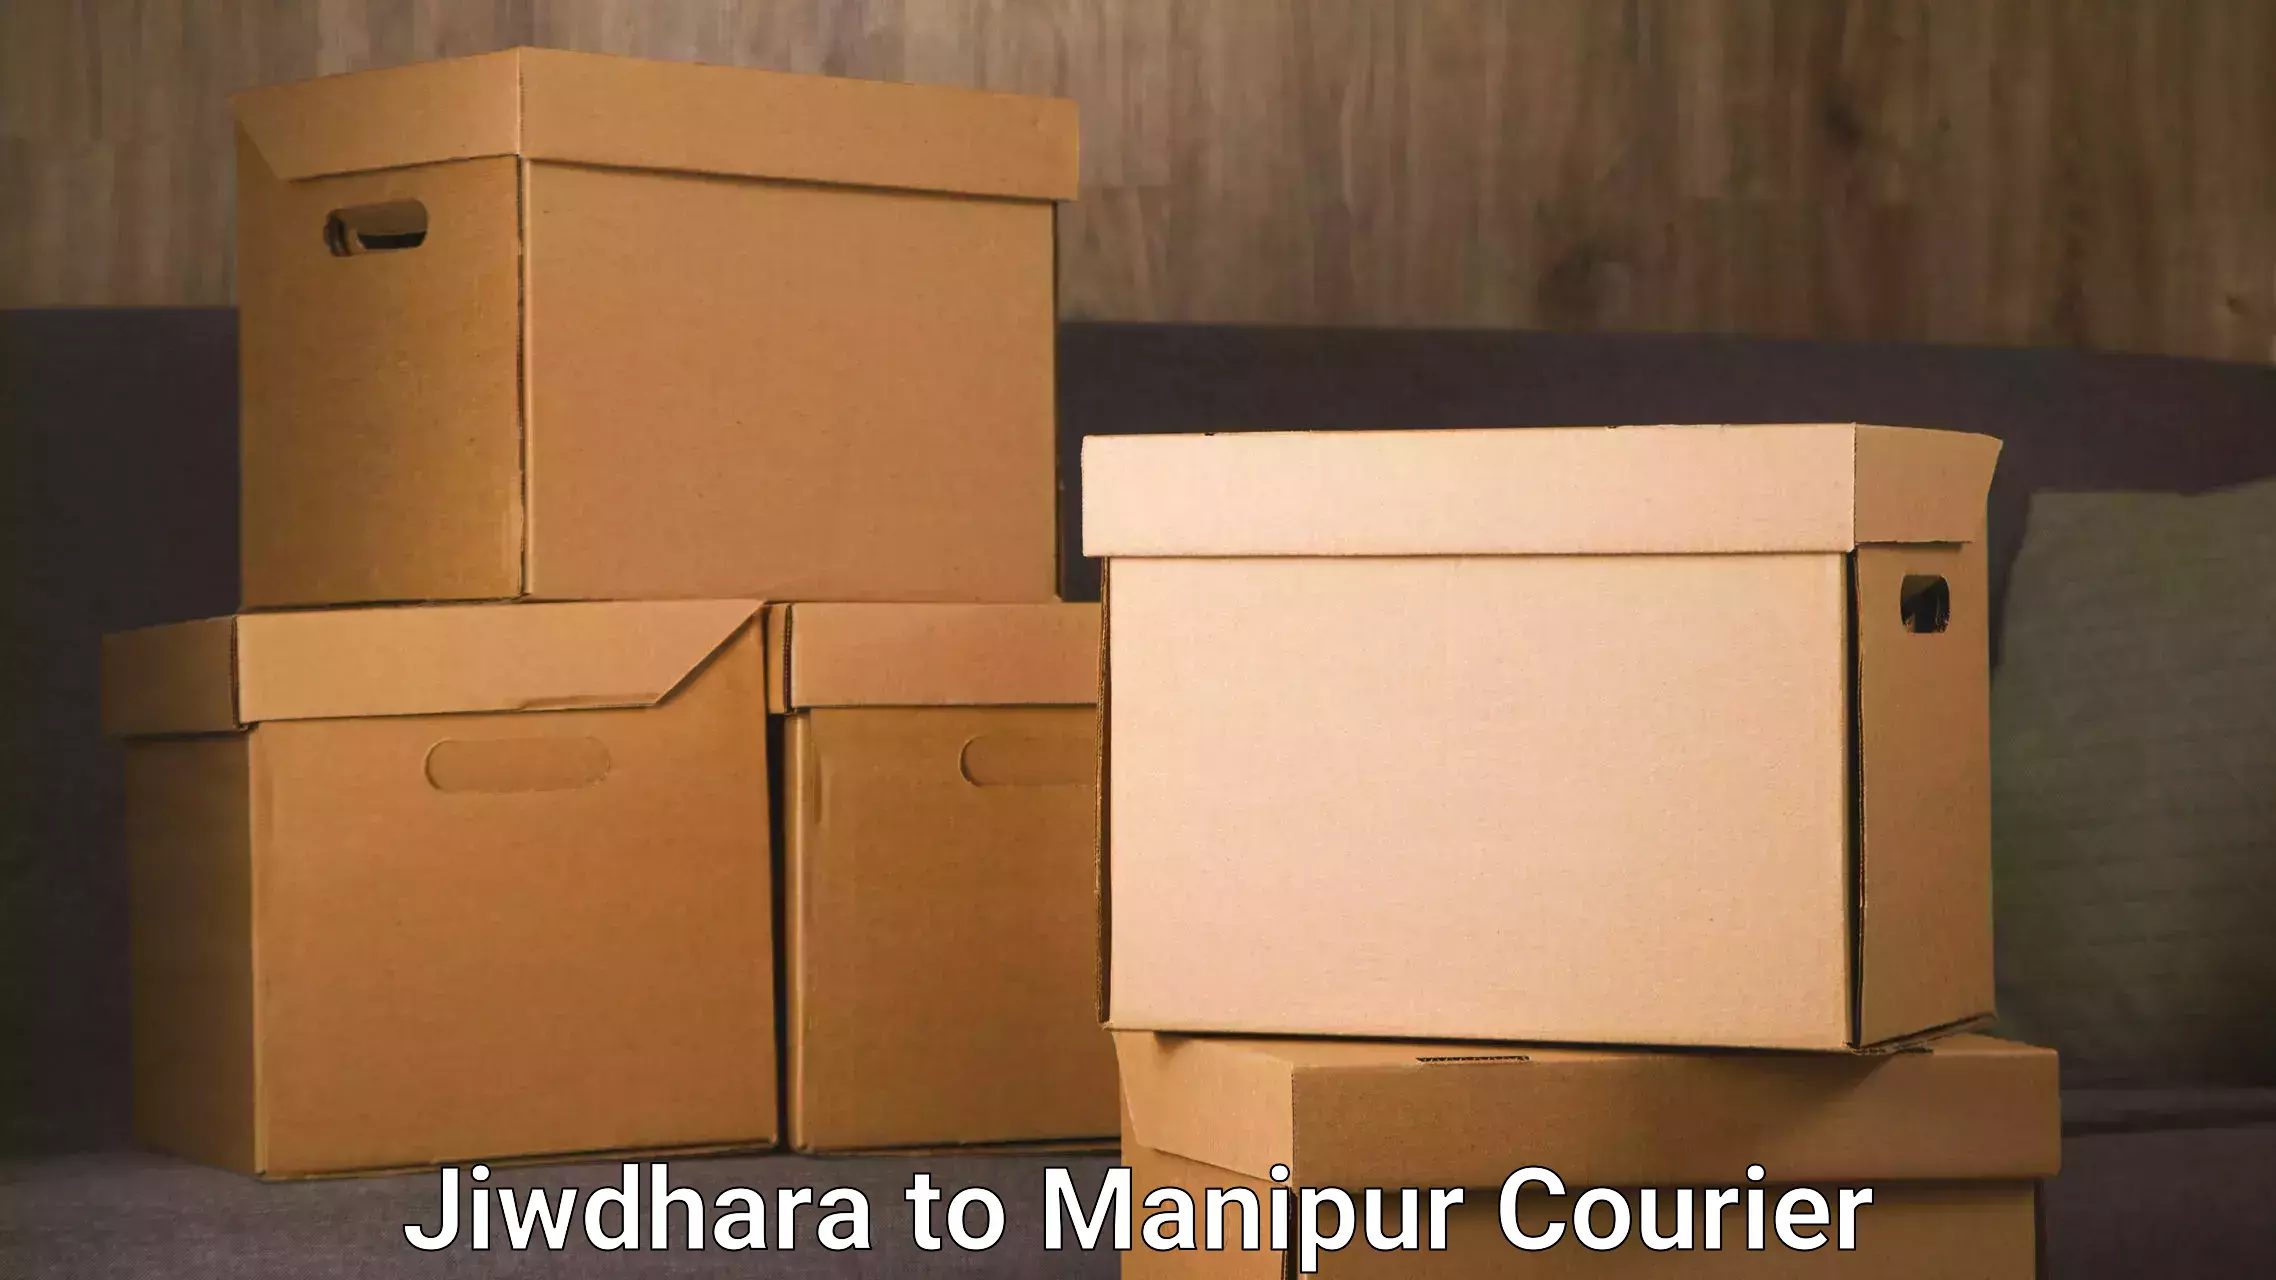 Professional furniture movers Jiwdhara to Manipur